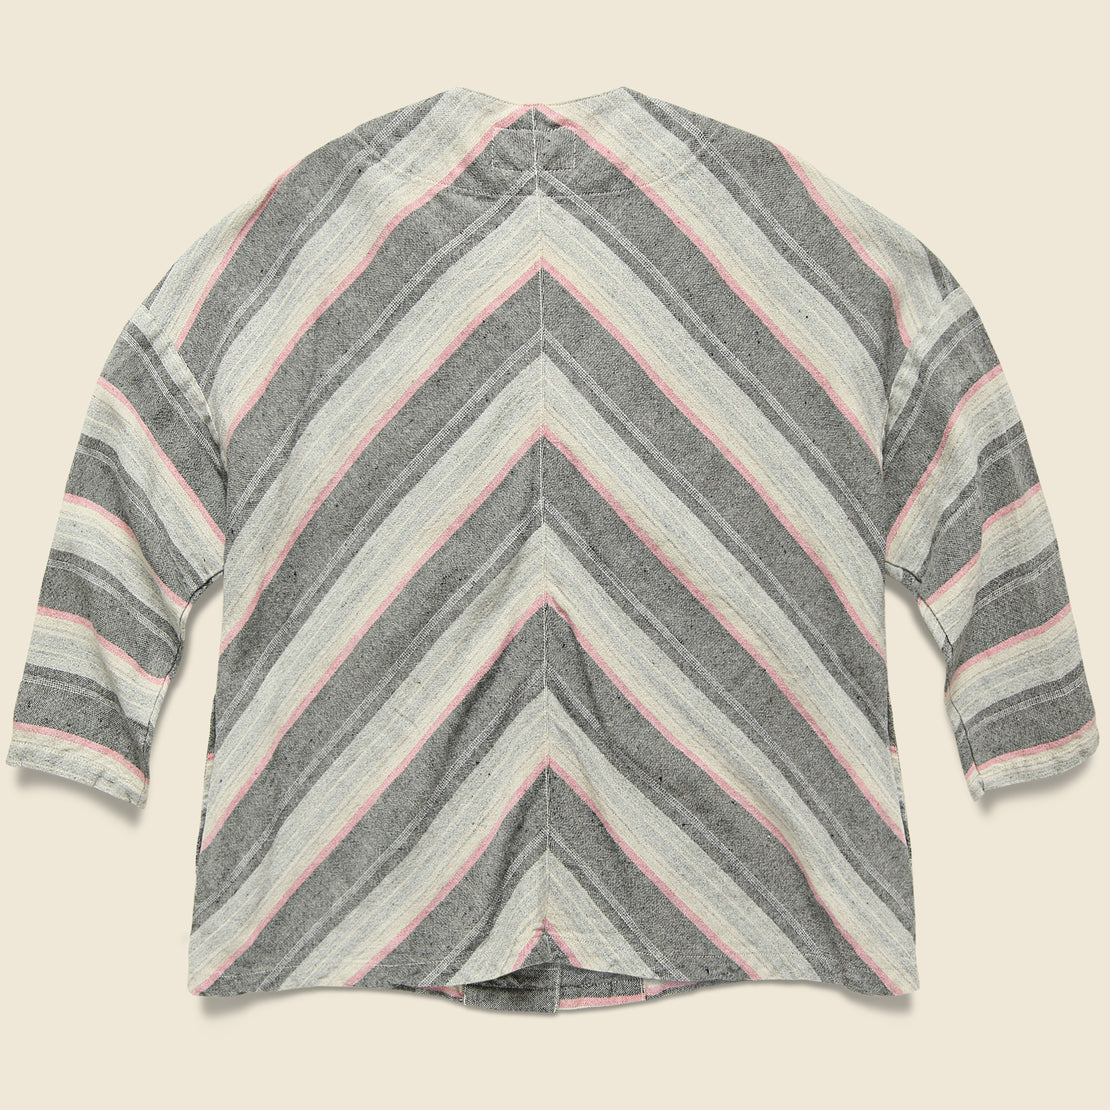 Native Border Haori Kimono - Grey/Pink Stripe - Setto - STAG Provisions - W - Tops - L/S Woven